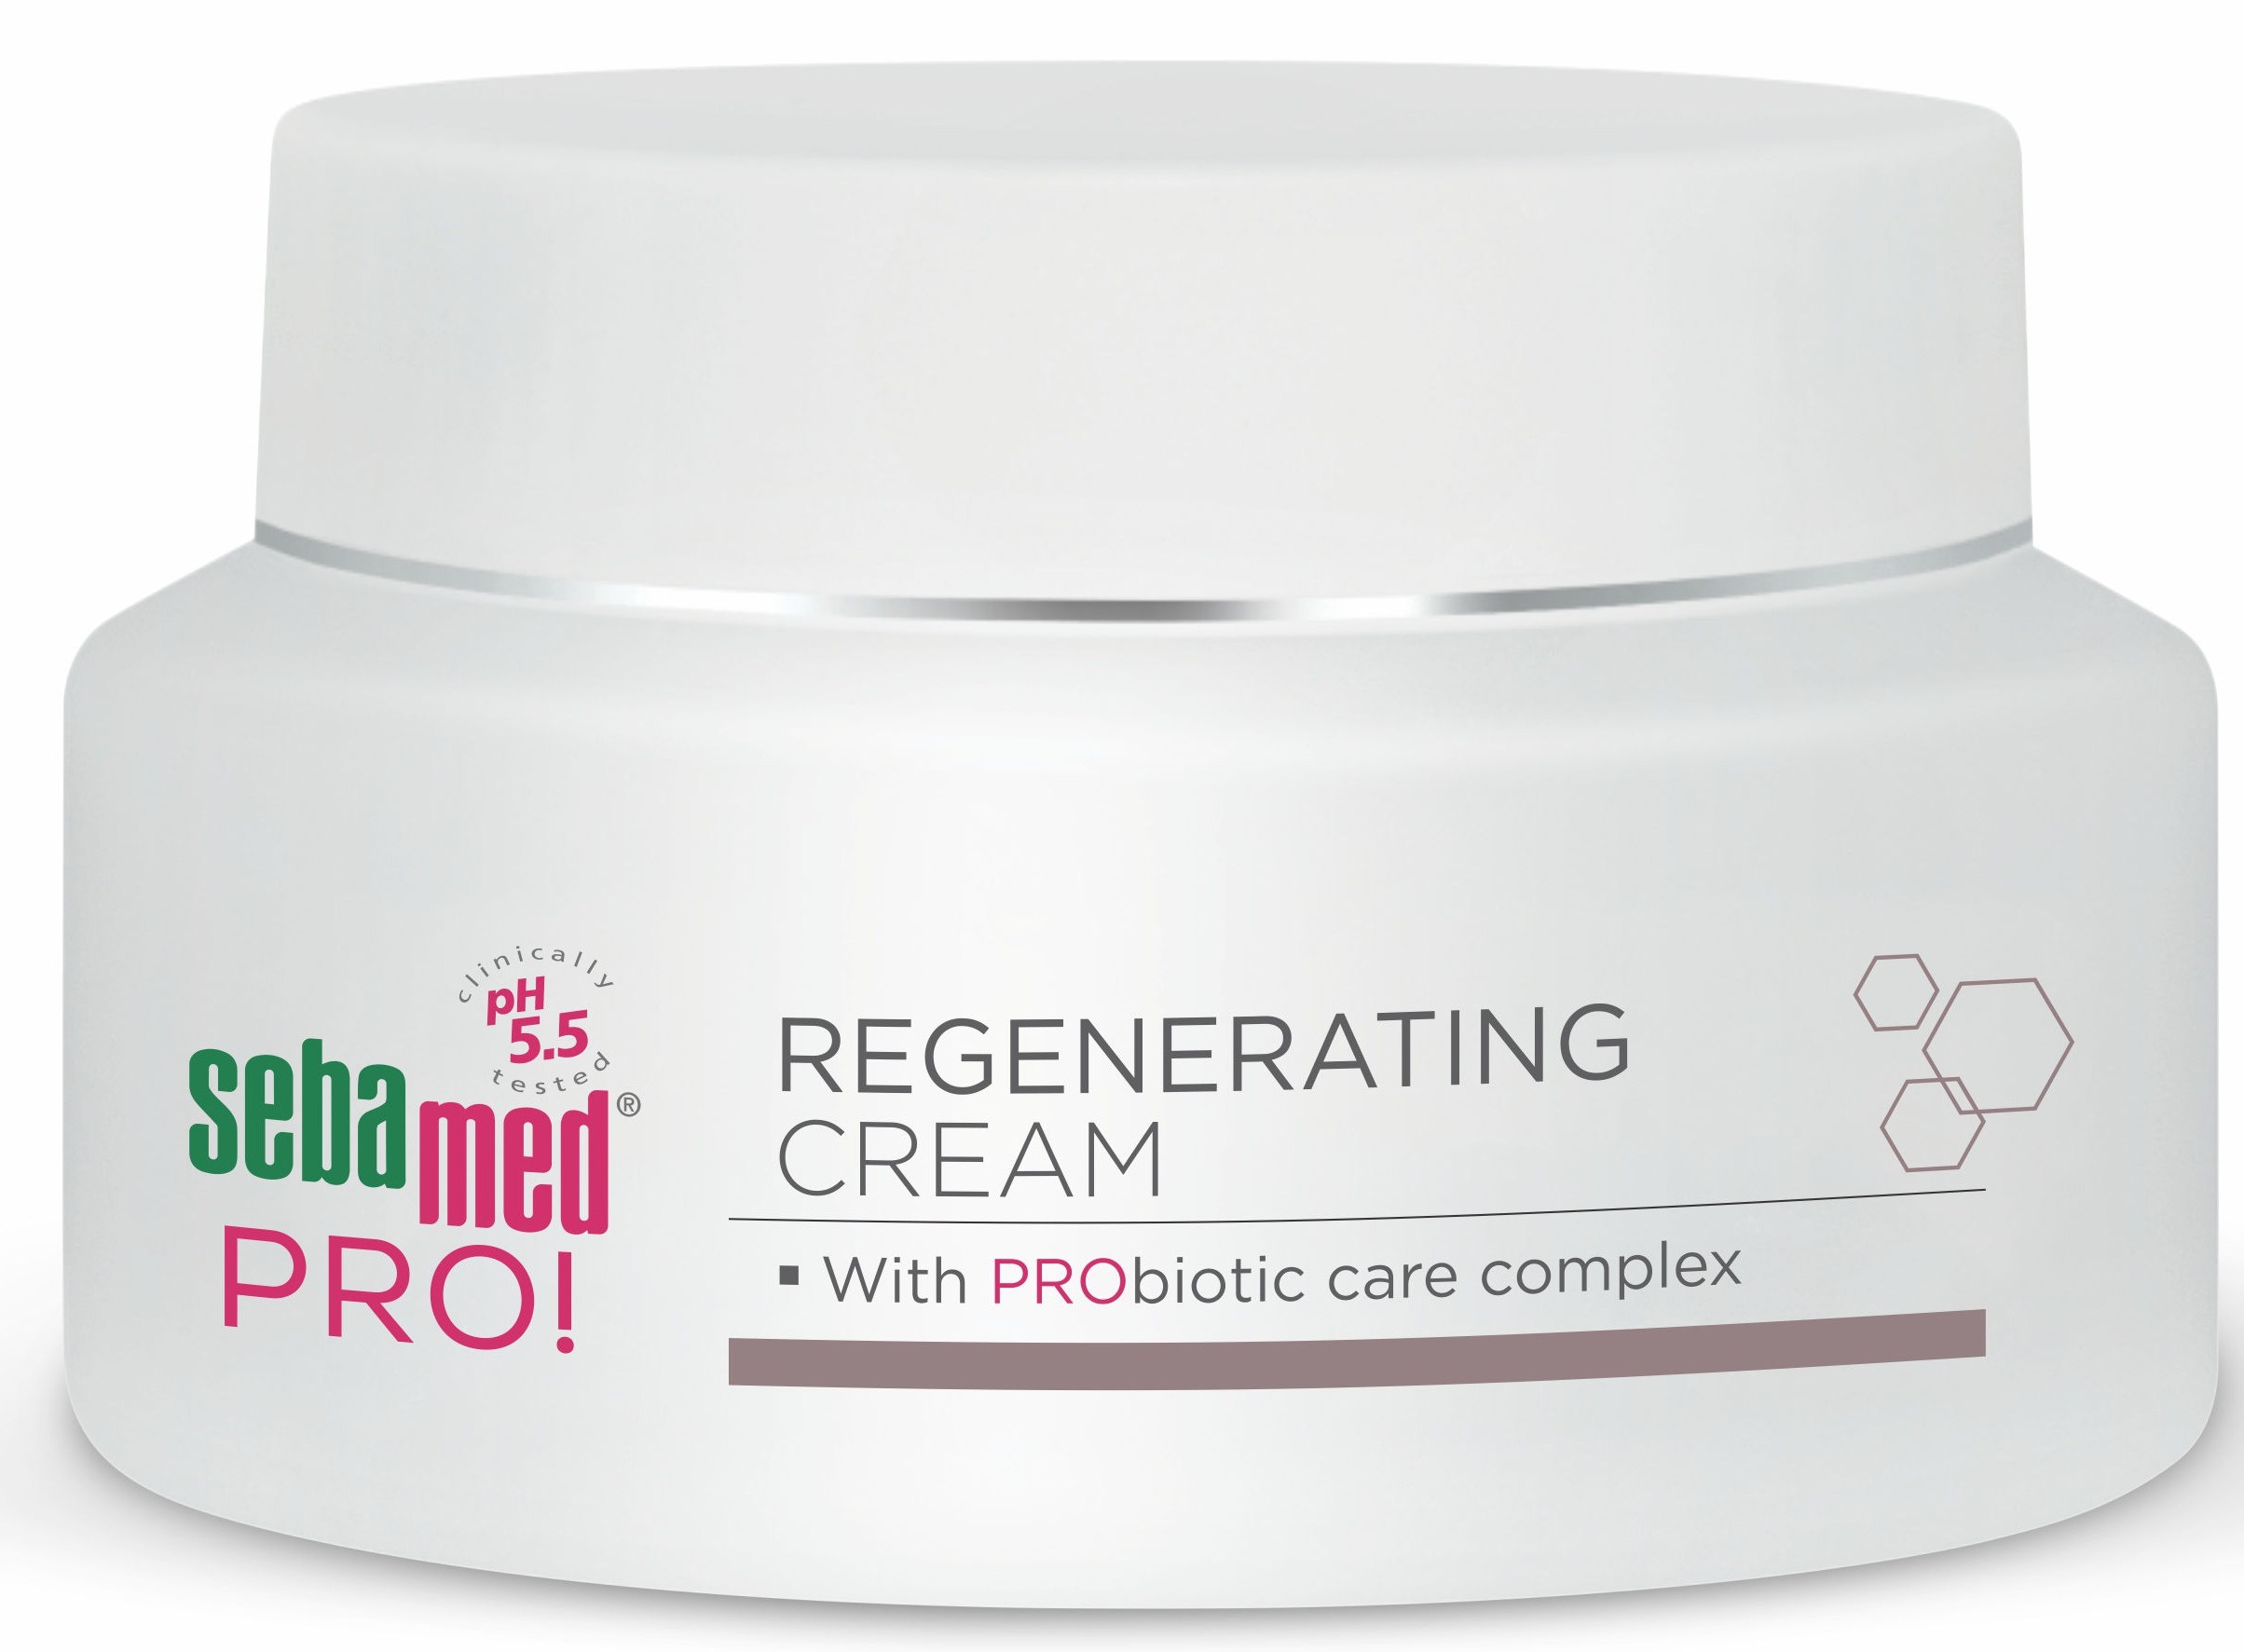 Sebamed PRO Regenerating Cream